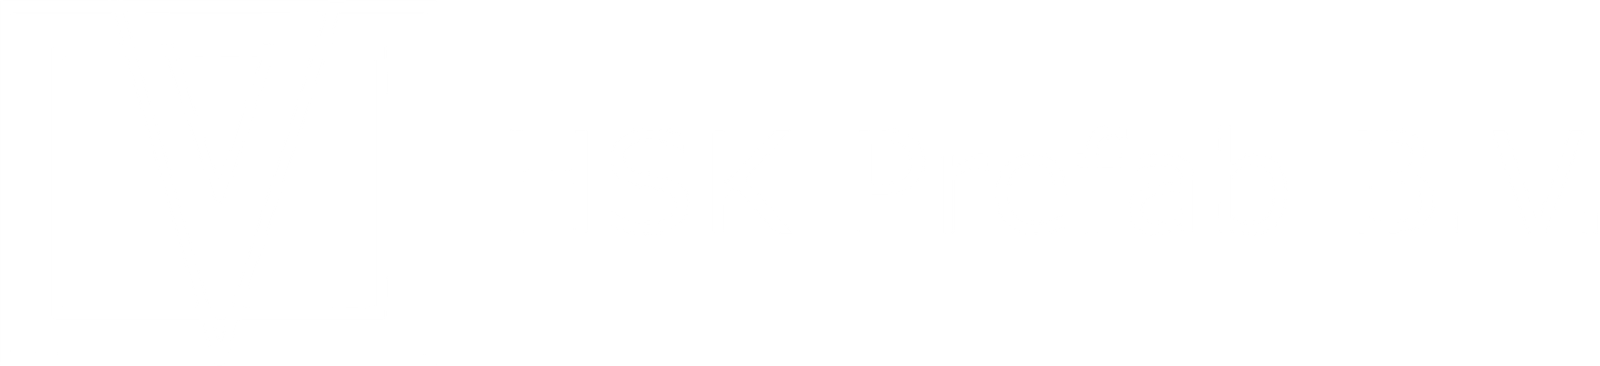 Logo HSK Prefab_wit